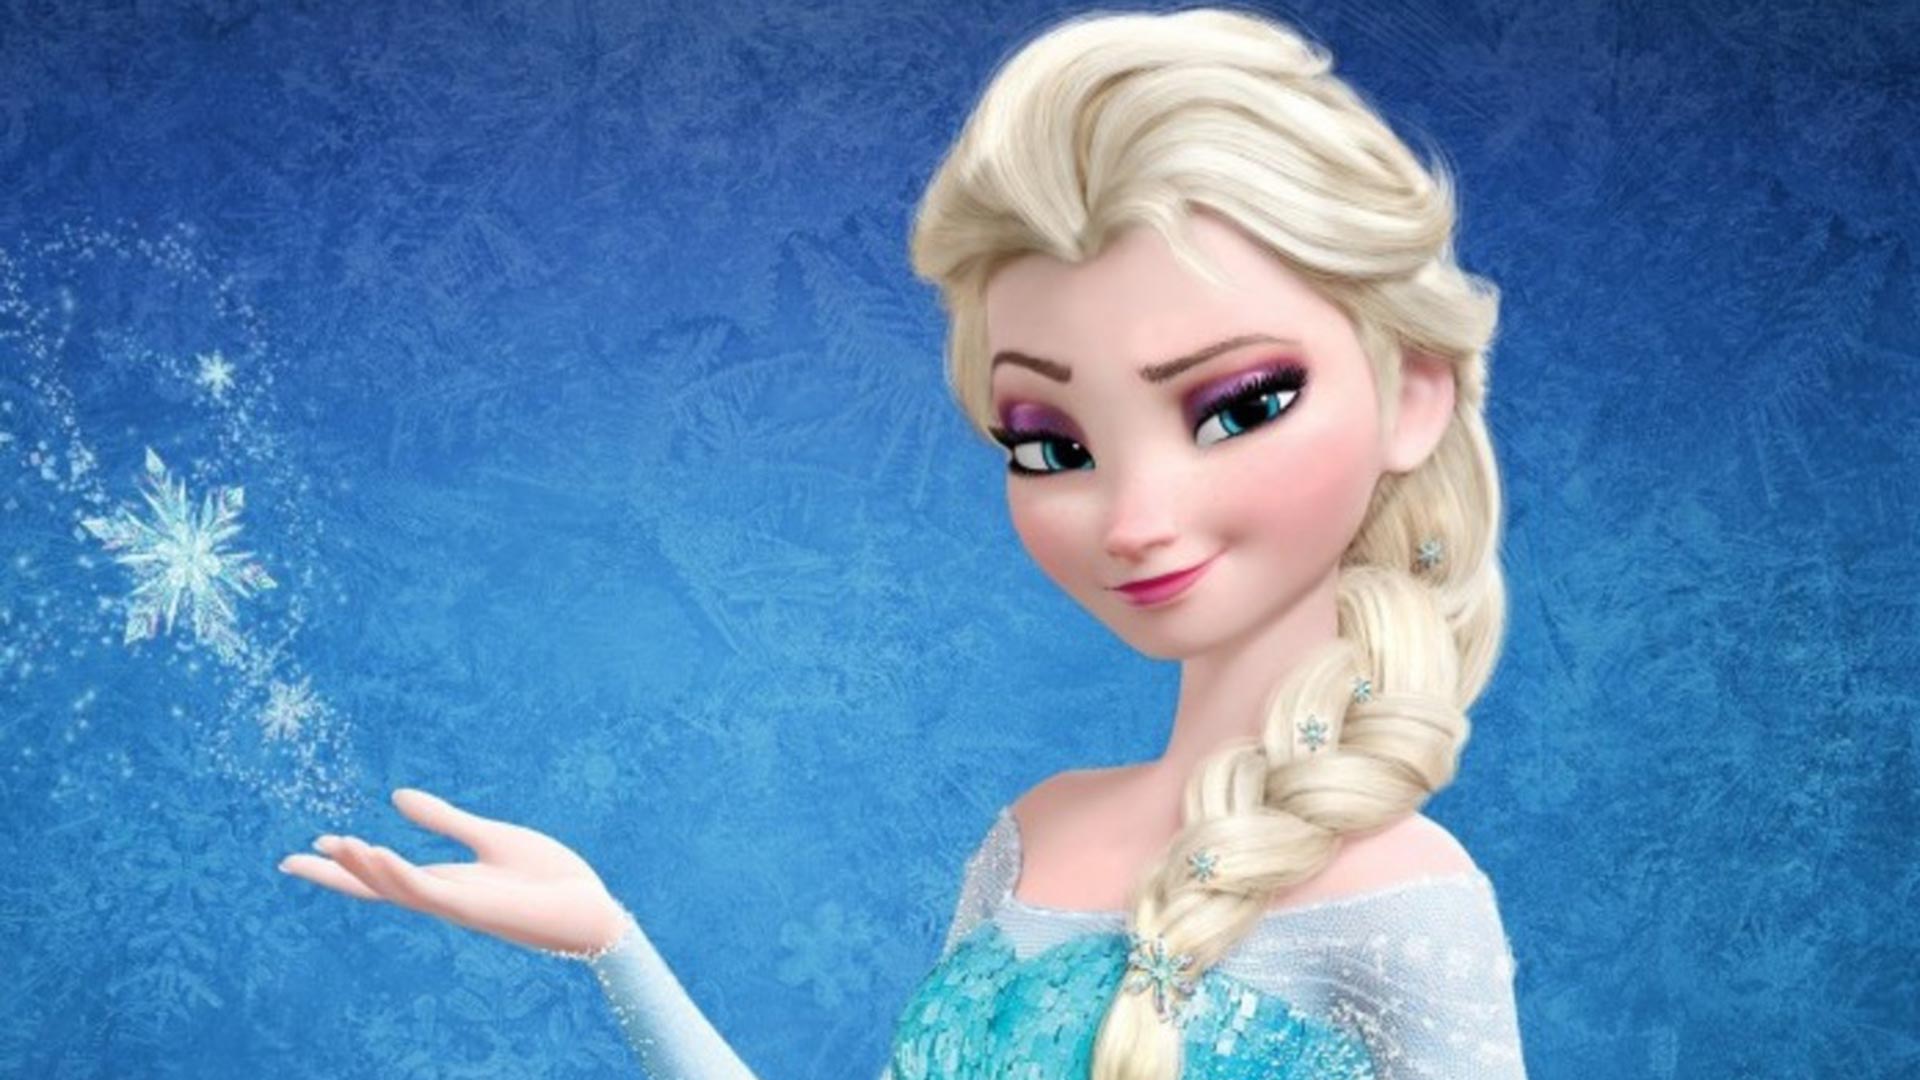 Erudito Noveno herir Por qué 'Frozen', Elsa y su mundo de hielo gustan tanto a los niños?